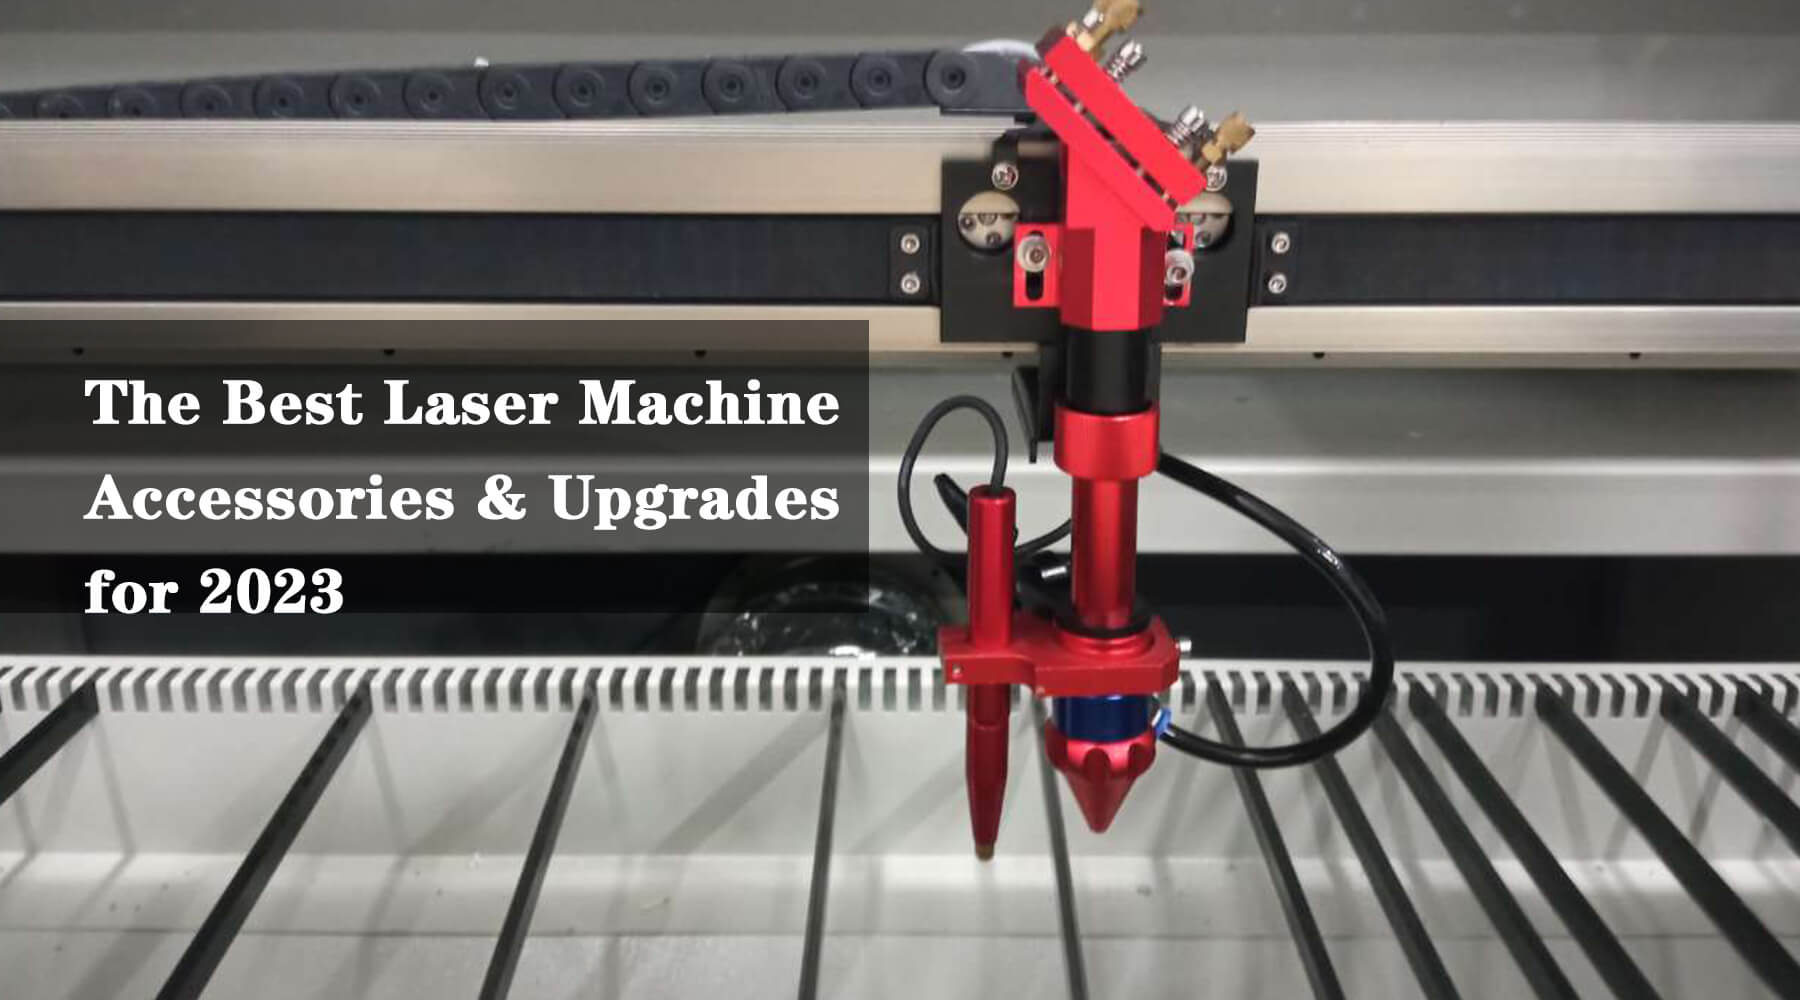 The Best Laser Machine Accessories & Upgrades for 2023